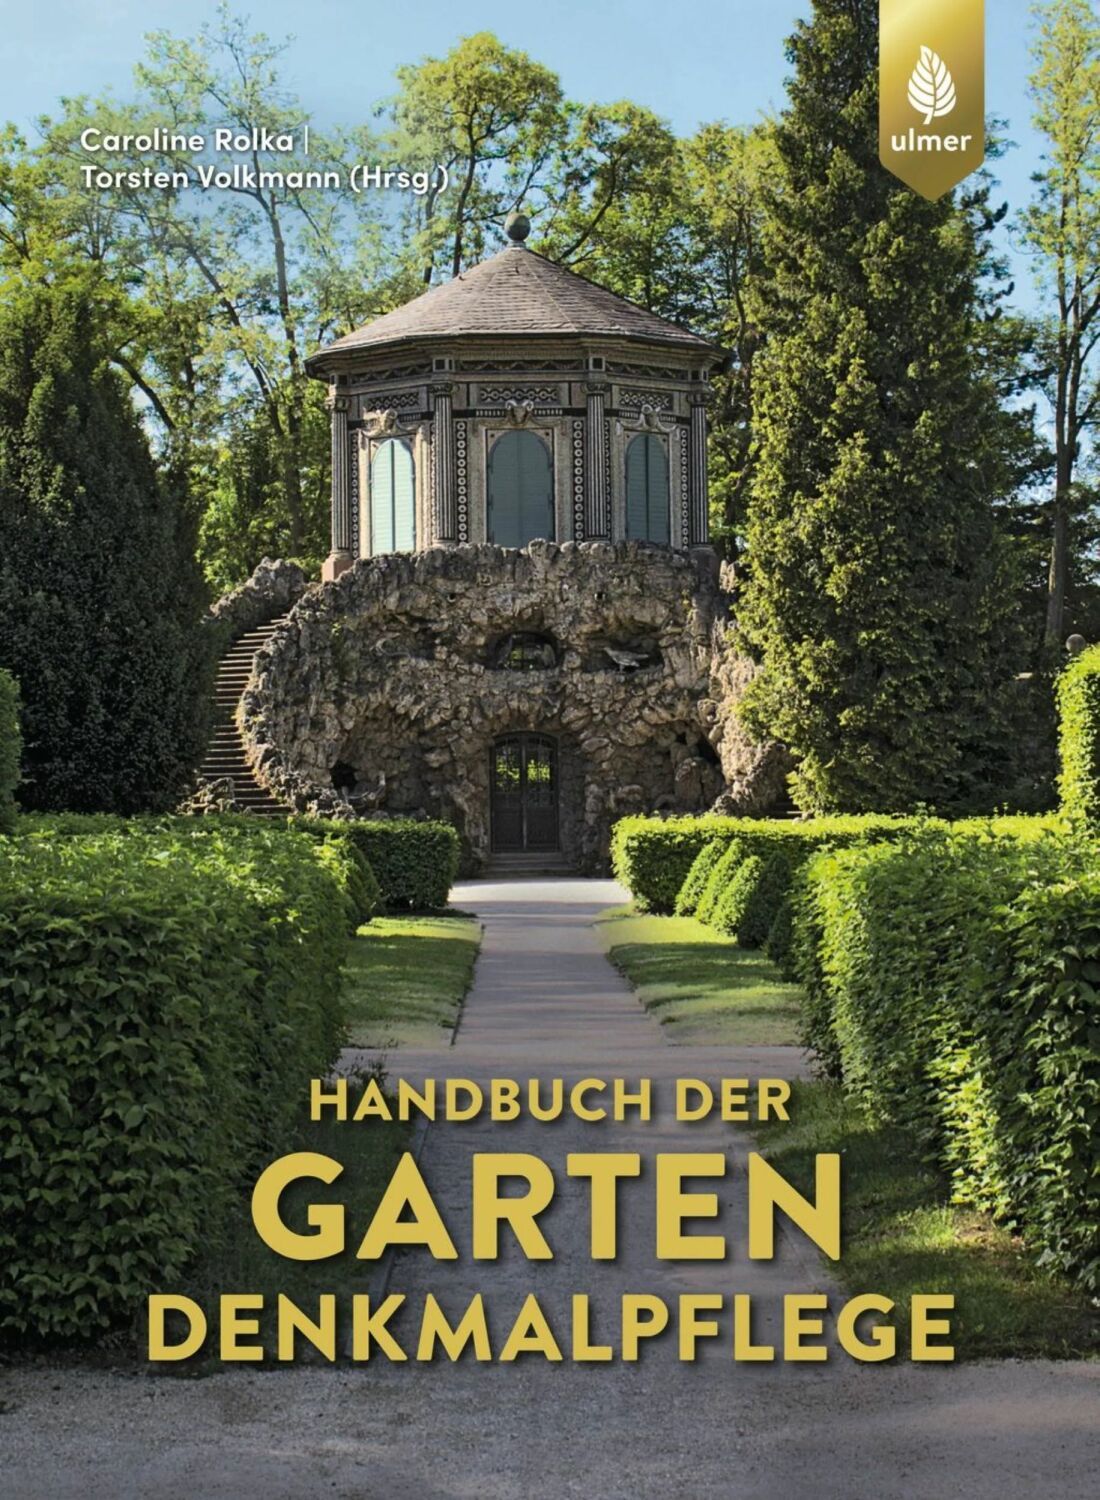 Titelbild: Handbuch der Gartendenkmalpflege, Ulmer Verlag, 2022